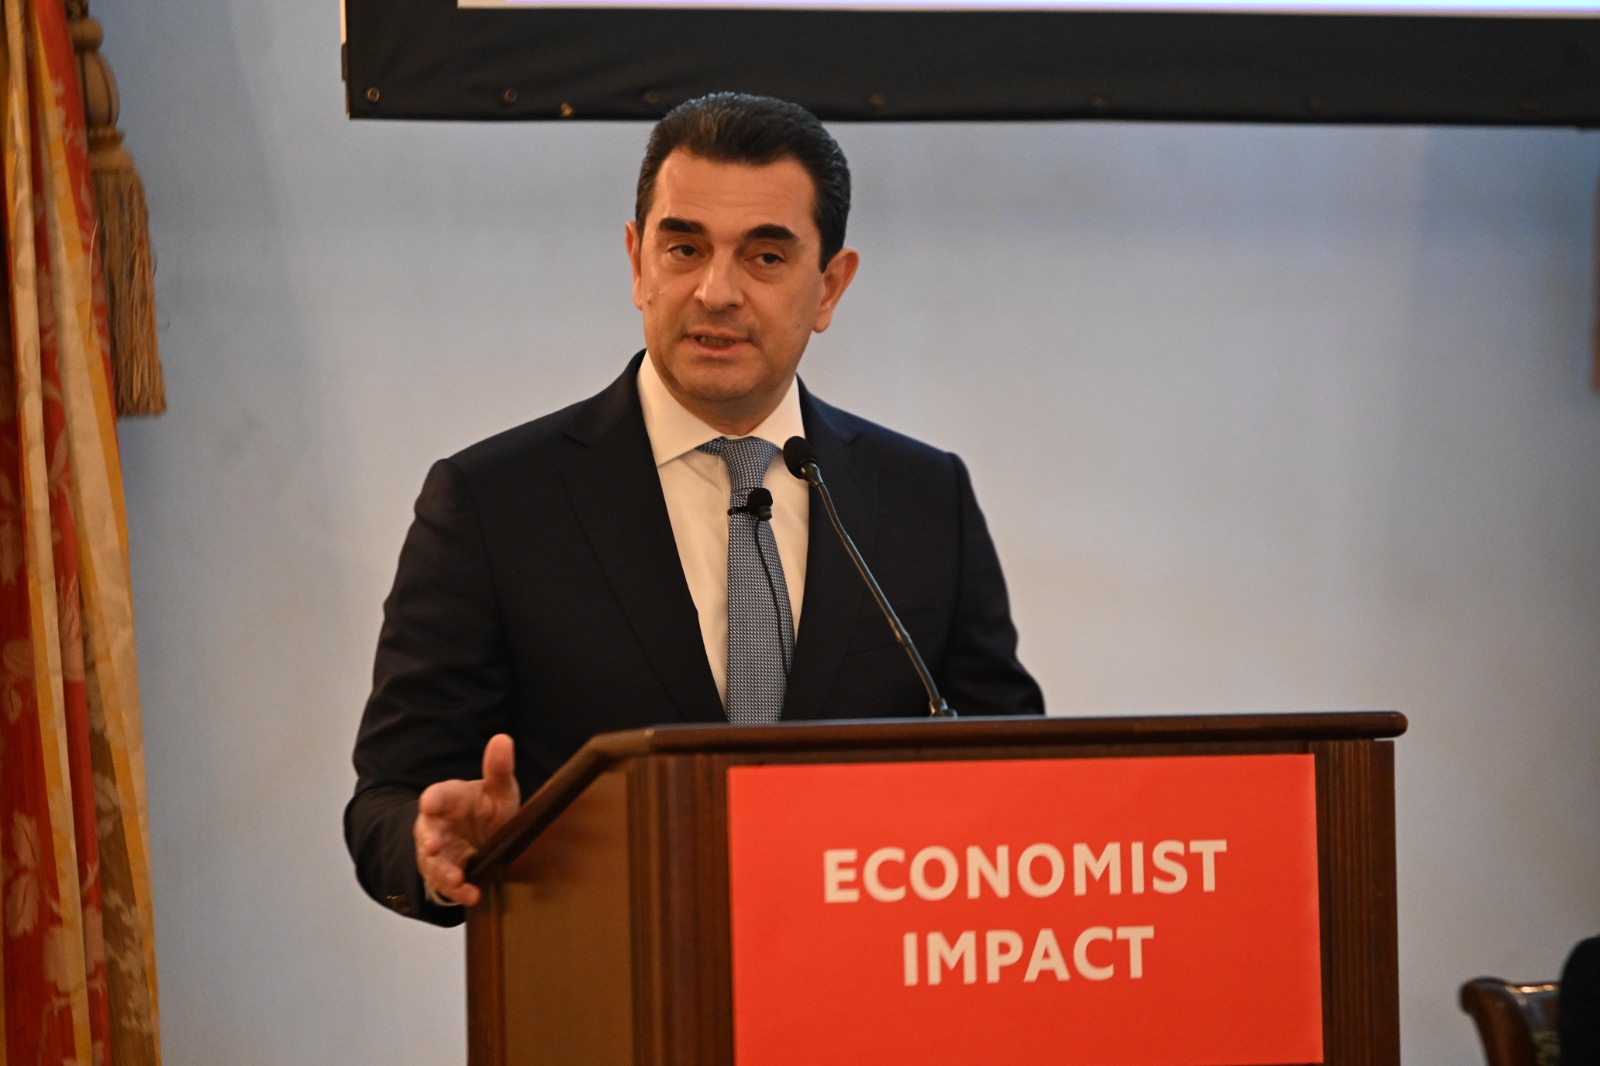 Ο Υπουργός Ανάπτυξης στο συνέδριο του «Economist Impact» στη Νέα Υόρκη     Κώστας Σκρέκας: «Η Ελλάδα έχει μεγάλες επενδυτικές δυνατότητες και ένα ελκυστικό επιχειρηματικό περιβάλλον»